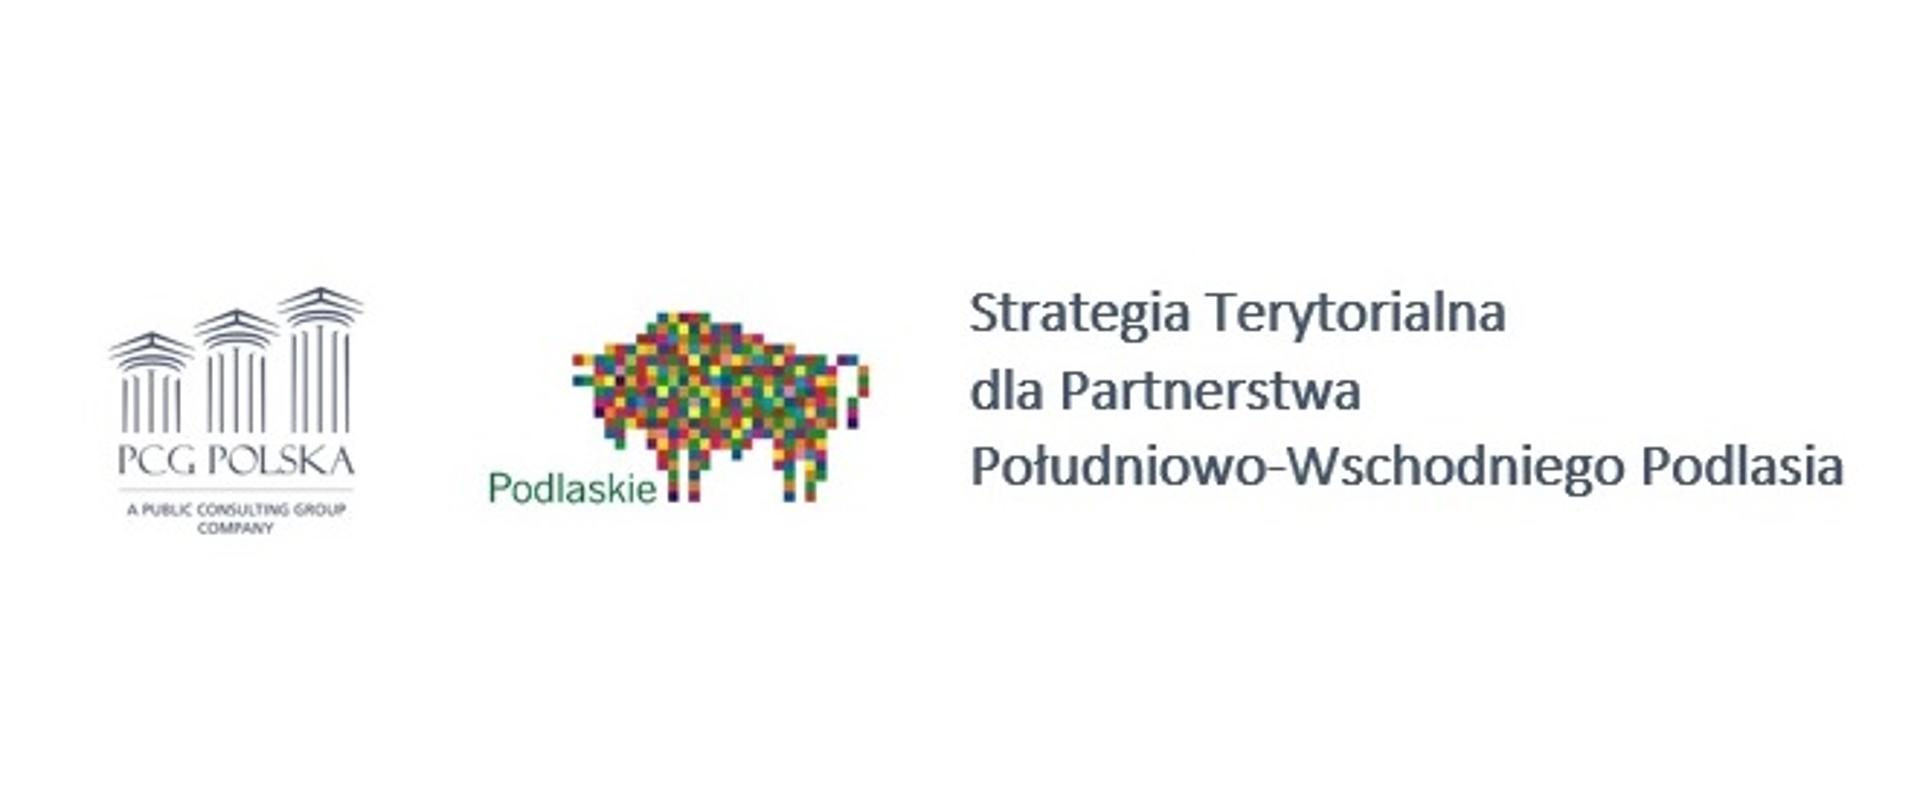 Logo Strategia Terytorialna dla Partnerstwa Południowo-Wschodniego Podlasia